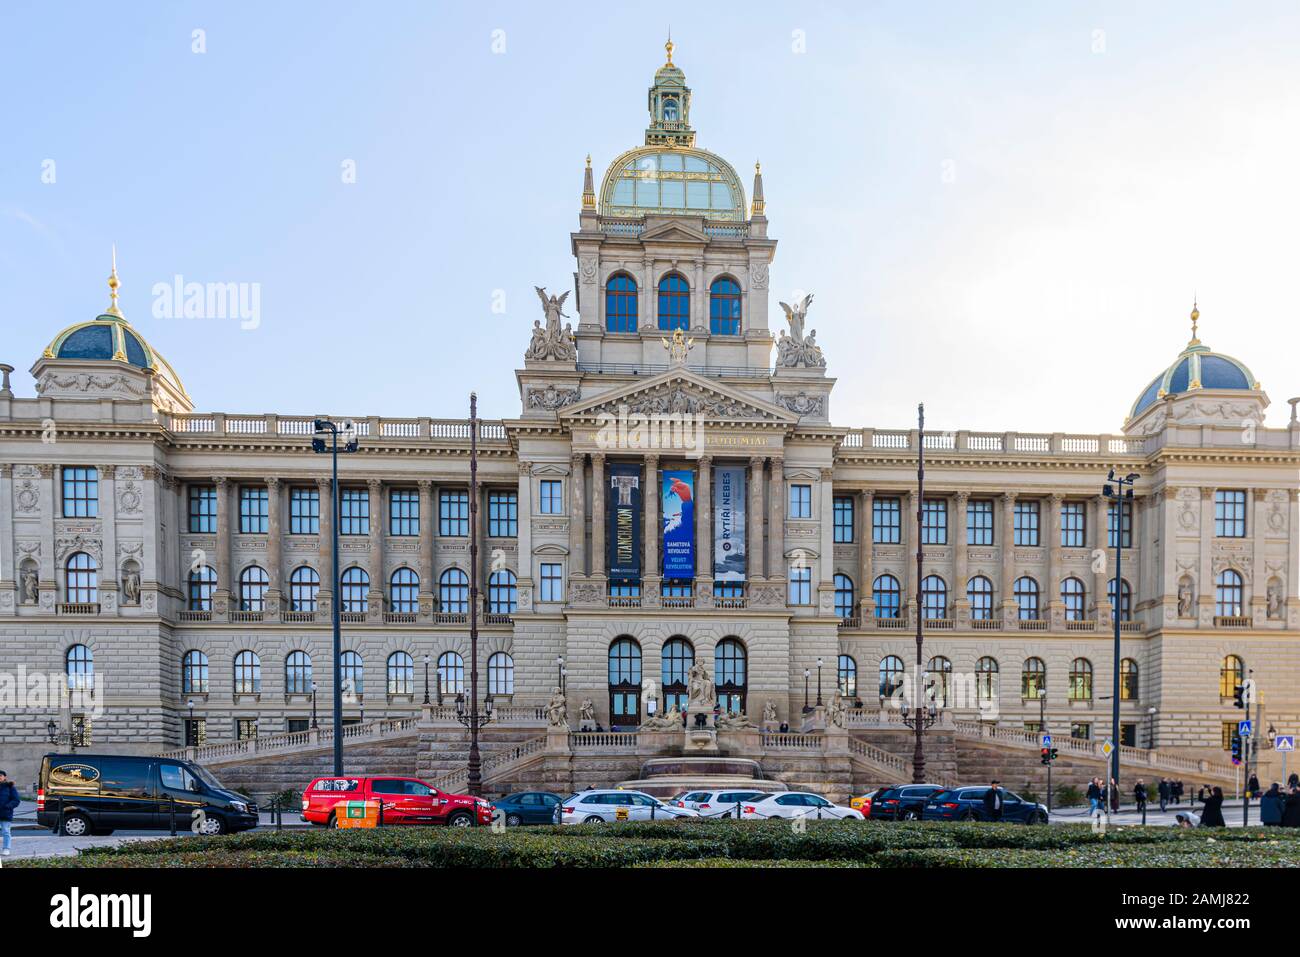 Národní muzeum, Prague, Czech Republic Stock Photo